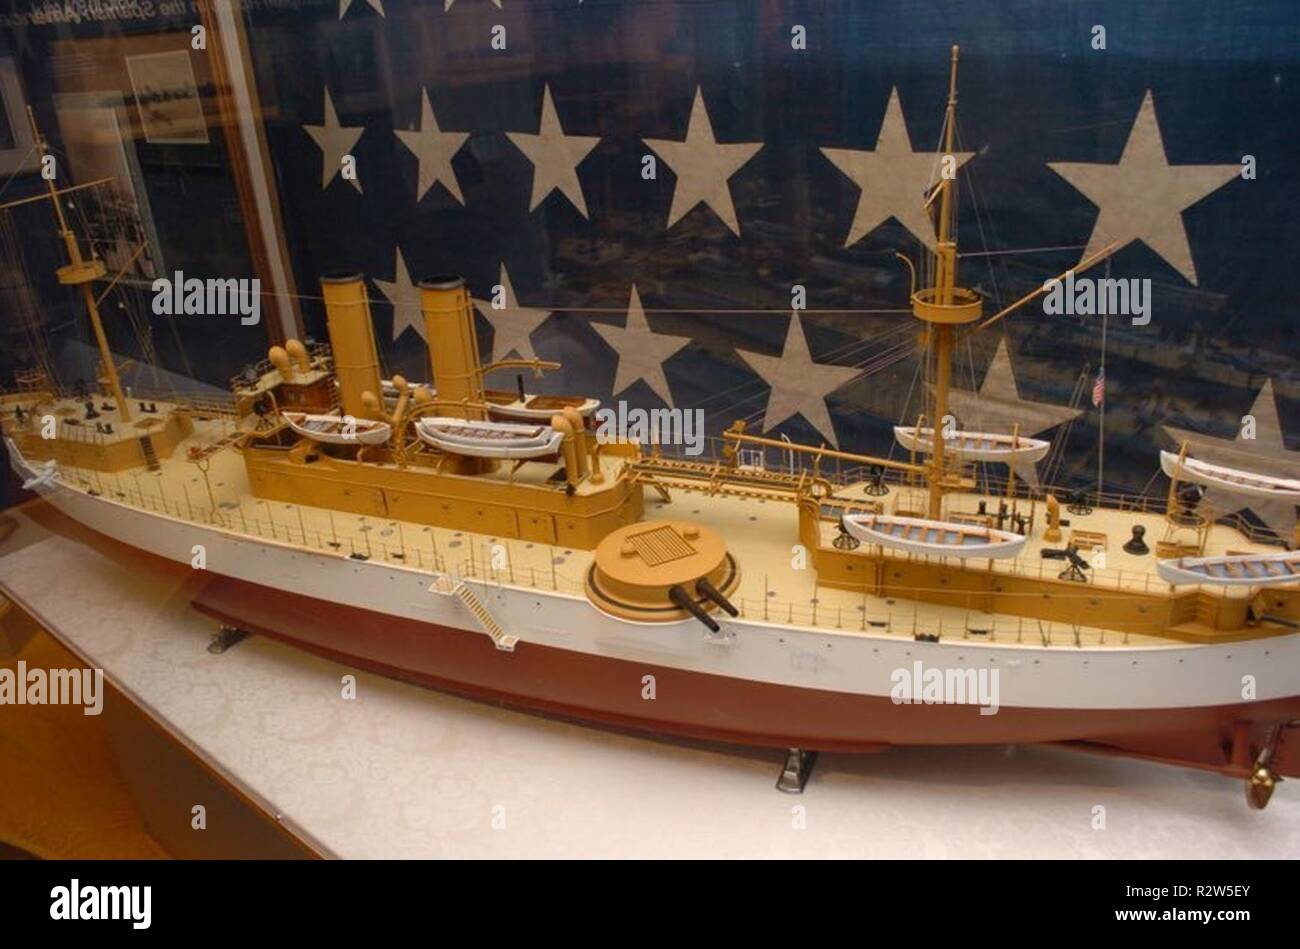 Le 18 novembre 1889, le cuirassé USS Maine (ACR 1) est lancé au New York Navy Yard. Elle a été mise en service en 1895, et a été le premier navire de la Marine américaine à être nommée d'après l'état du Maine. Elle gagne l'attention nationale quand elle a explosé soudainement le 15 février 1898 alors que dans le port de La Havane, Cuba. L'hôtel Hampton Roads Naval Museum contient un modèle détaillé de l'USS Maine dans leur galerie. Derrière le modèle est le pavillon de beaupré de la Maine. Divers Enquête sur l'explosion sur le cuirassé a récupéré le cric de la Maine. Sur le revers, on lit "Union européenne n° 3 New York Navy Yard 1892." e Banque D'Images